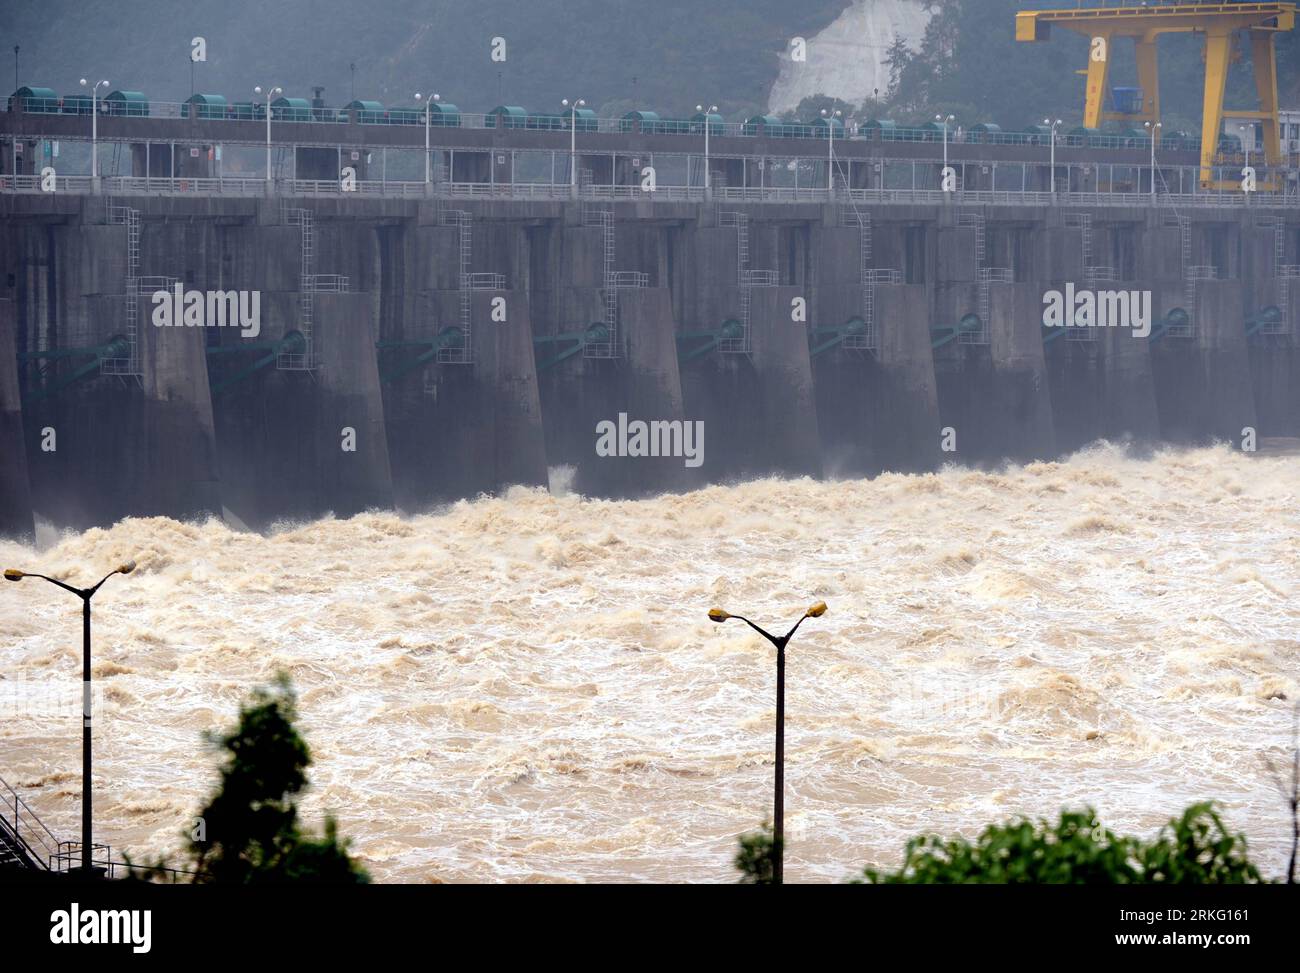 Bildnummer: 55530171 Datum: 21.06.2011 Copyright: imago/Xinhua (110621) -- TONGLU, 21. Juni 2011 (Xinhua) -- aus der Schleuse des Fuchun River Reservior in Tonglu, ostchinesische Provinz Zhejiang, 21. Juni 2011. Flussabwärts gelegen, begann das Fuchun River Reservior um 12:00 Uhr mit der Wasserableitung, nachdem das Xin an River Reservior drei Schleusentore öffnete, um seinen Wasserstand am frühen Dienstagmorgen zu senken. (Xinhua/Xu Yu) (ljh) CHINA-ZHEJIANG-FUCHUN RIVER RESERVOIR-WATER DISCHARGE (CN) PUBLICATIONxNOTxINxCHN Gesellschaft Fluss Speicherbecken Stausee x0x xsk 2011 quer Bil Stockfoto